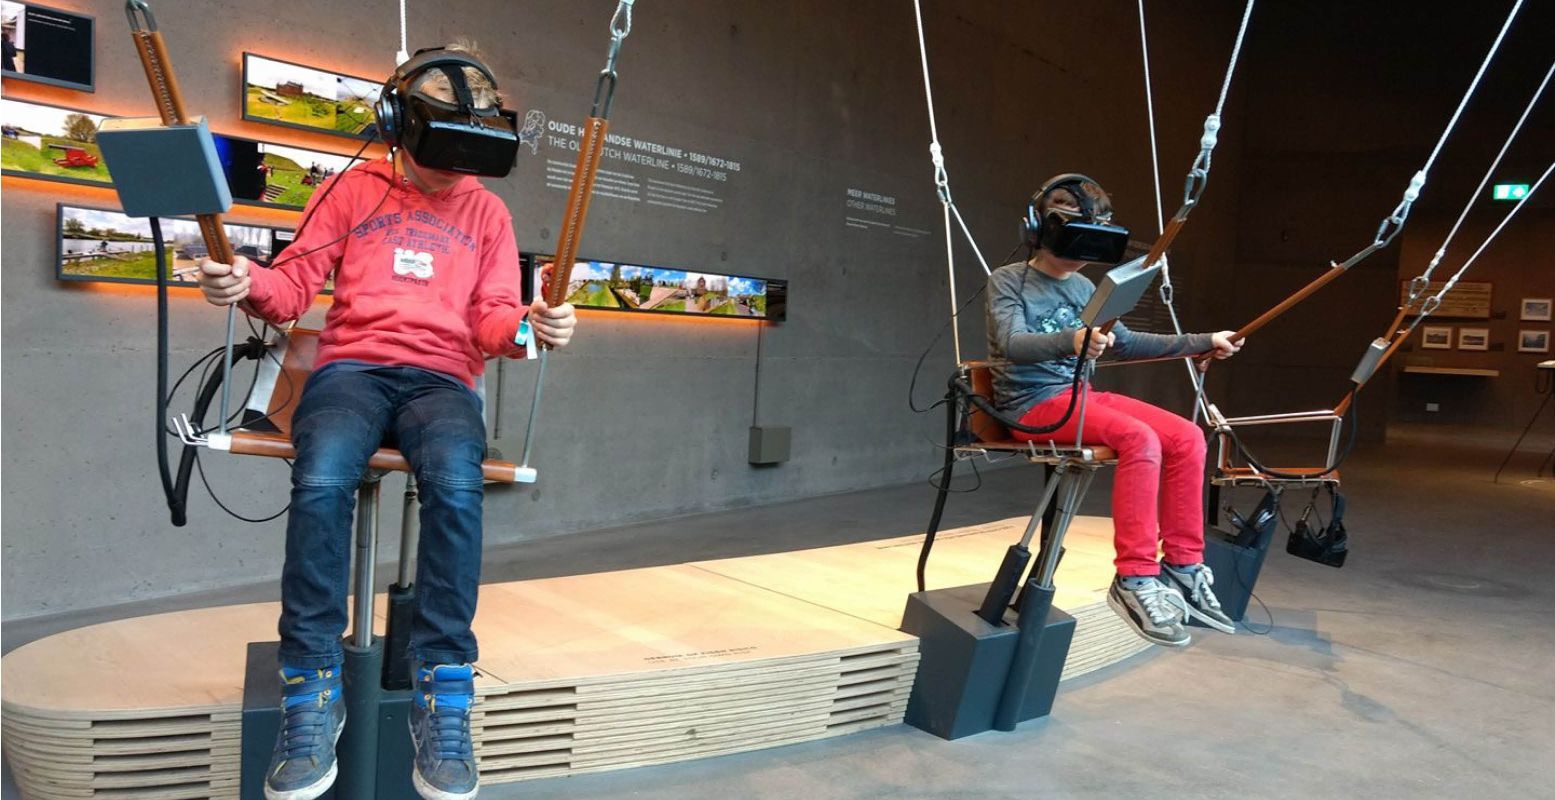 Ervaar de waterlinie in virtual reality bij Waterliniemuseum Fort bij de Vechten. Foto: Waterliniemuseum Fort bij Vechten